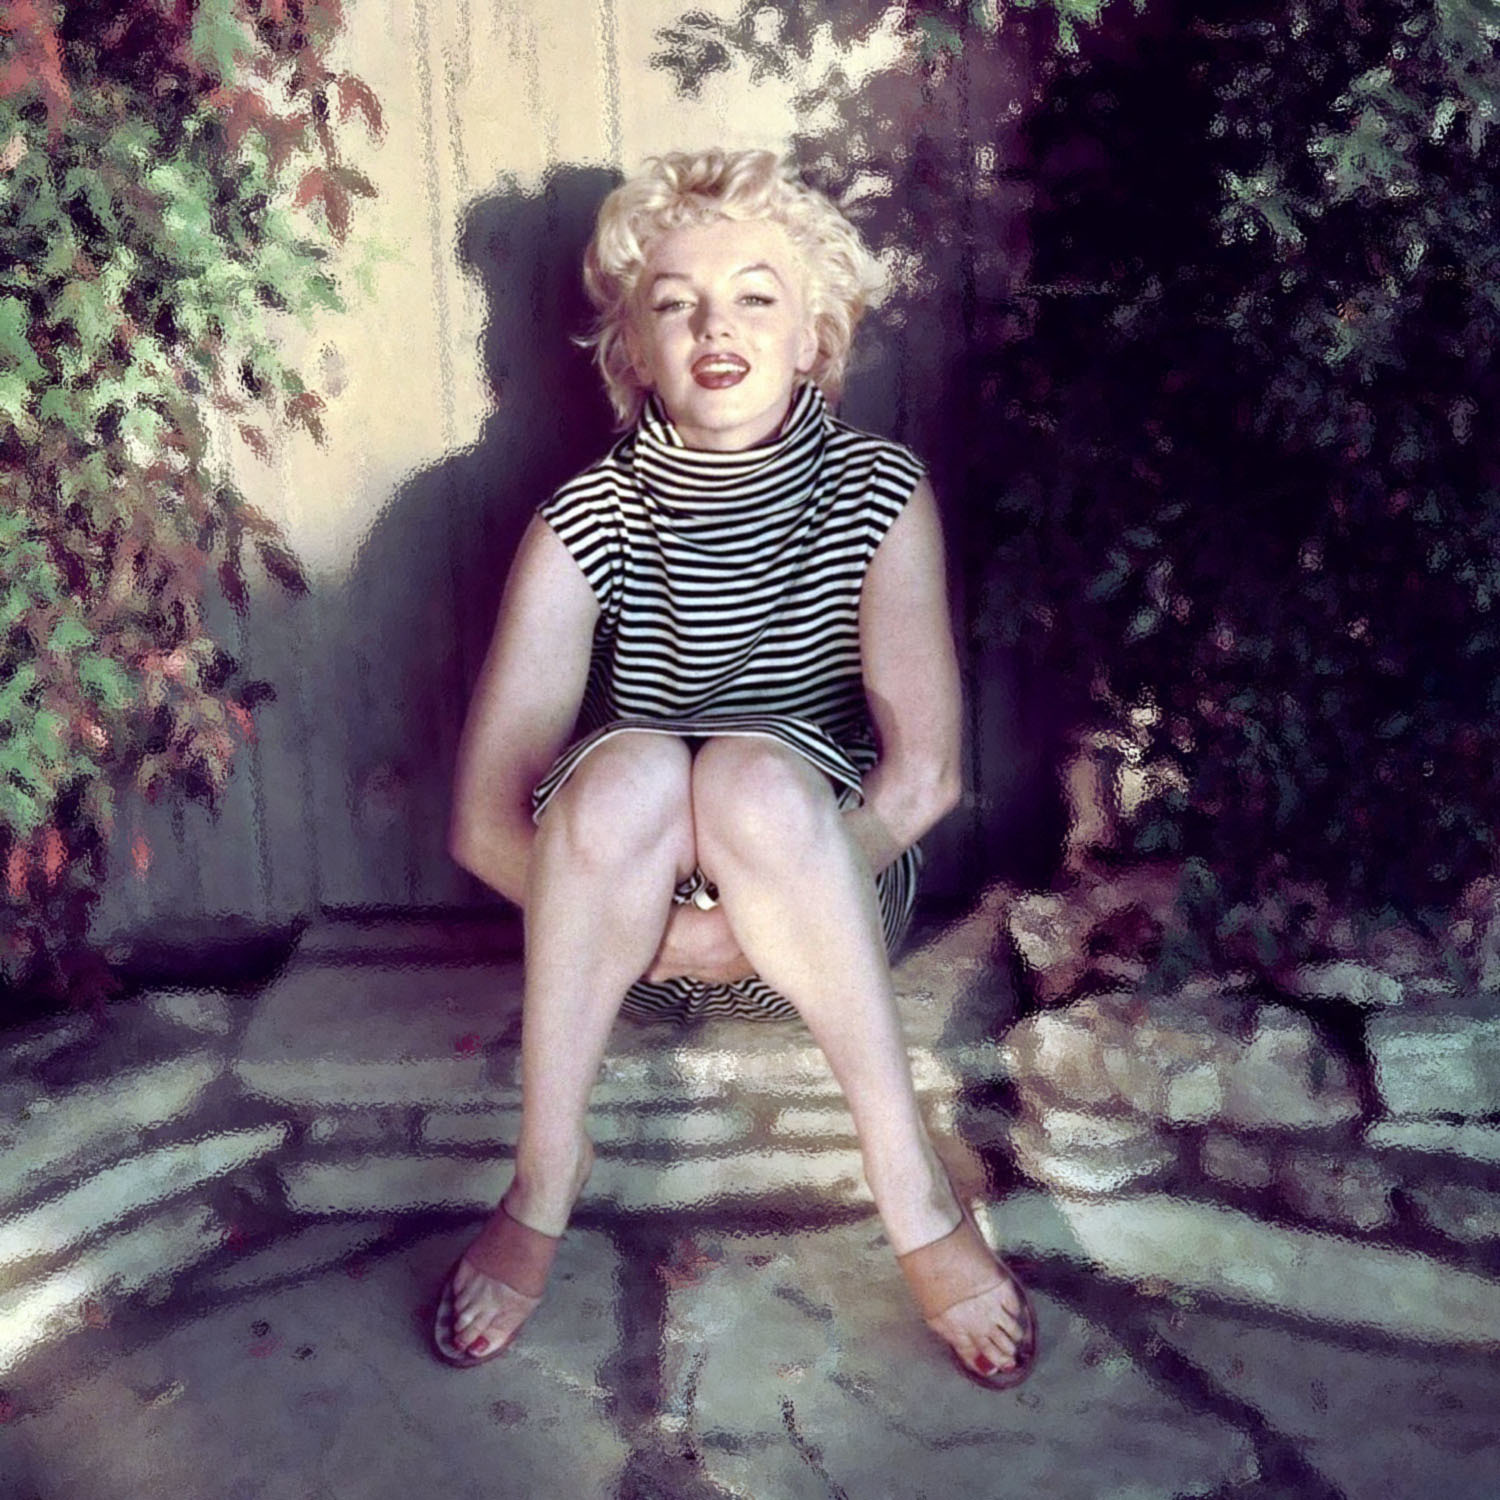 マリリン・モンロー（Marilyn Monroe）・・・美女落ち穂拾い200616_e0042361_14360985.jpg